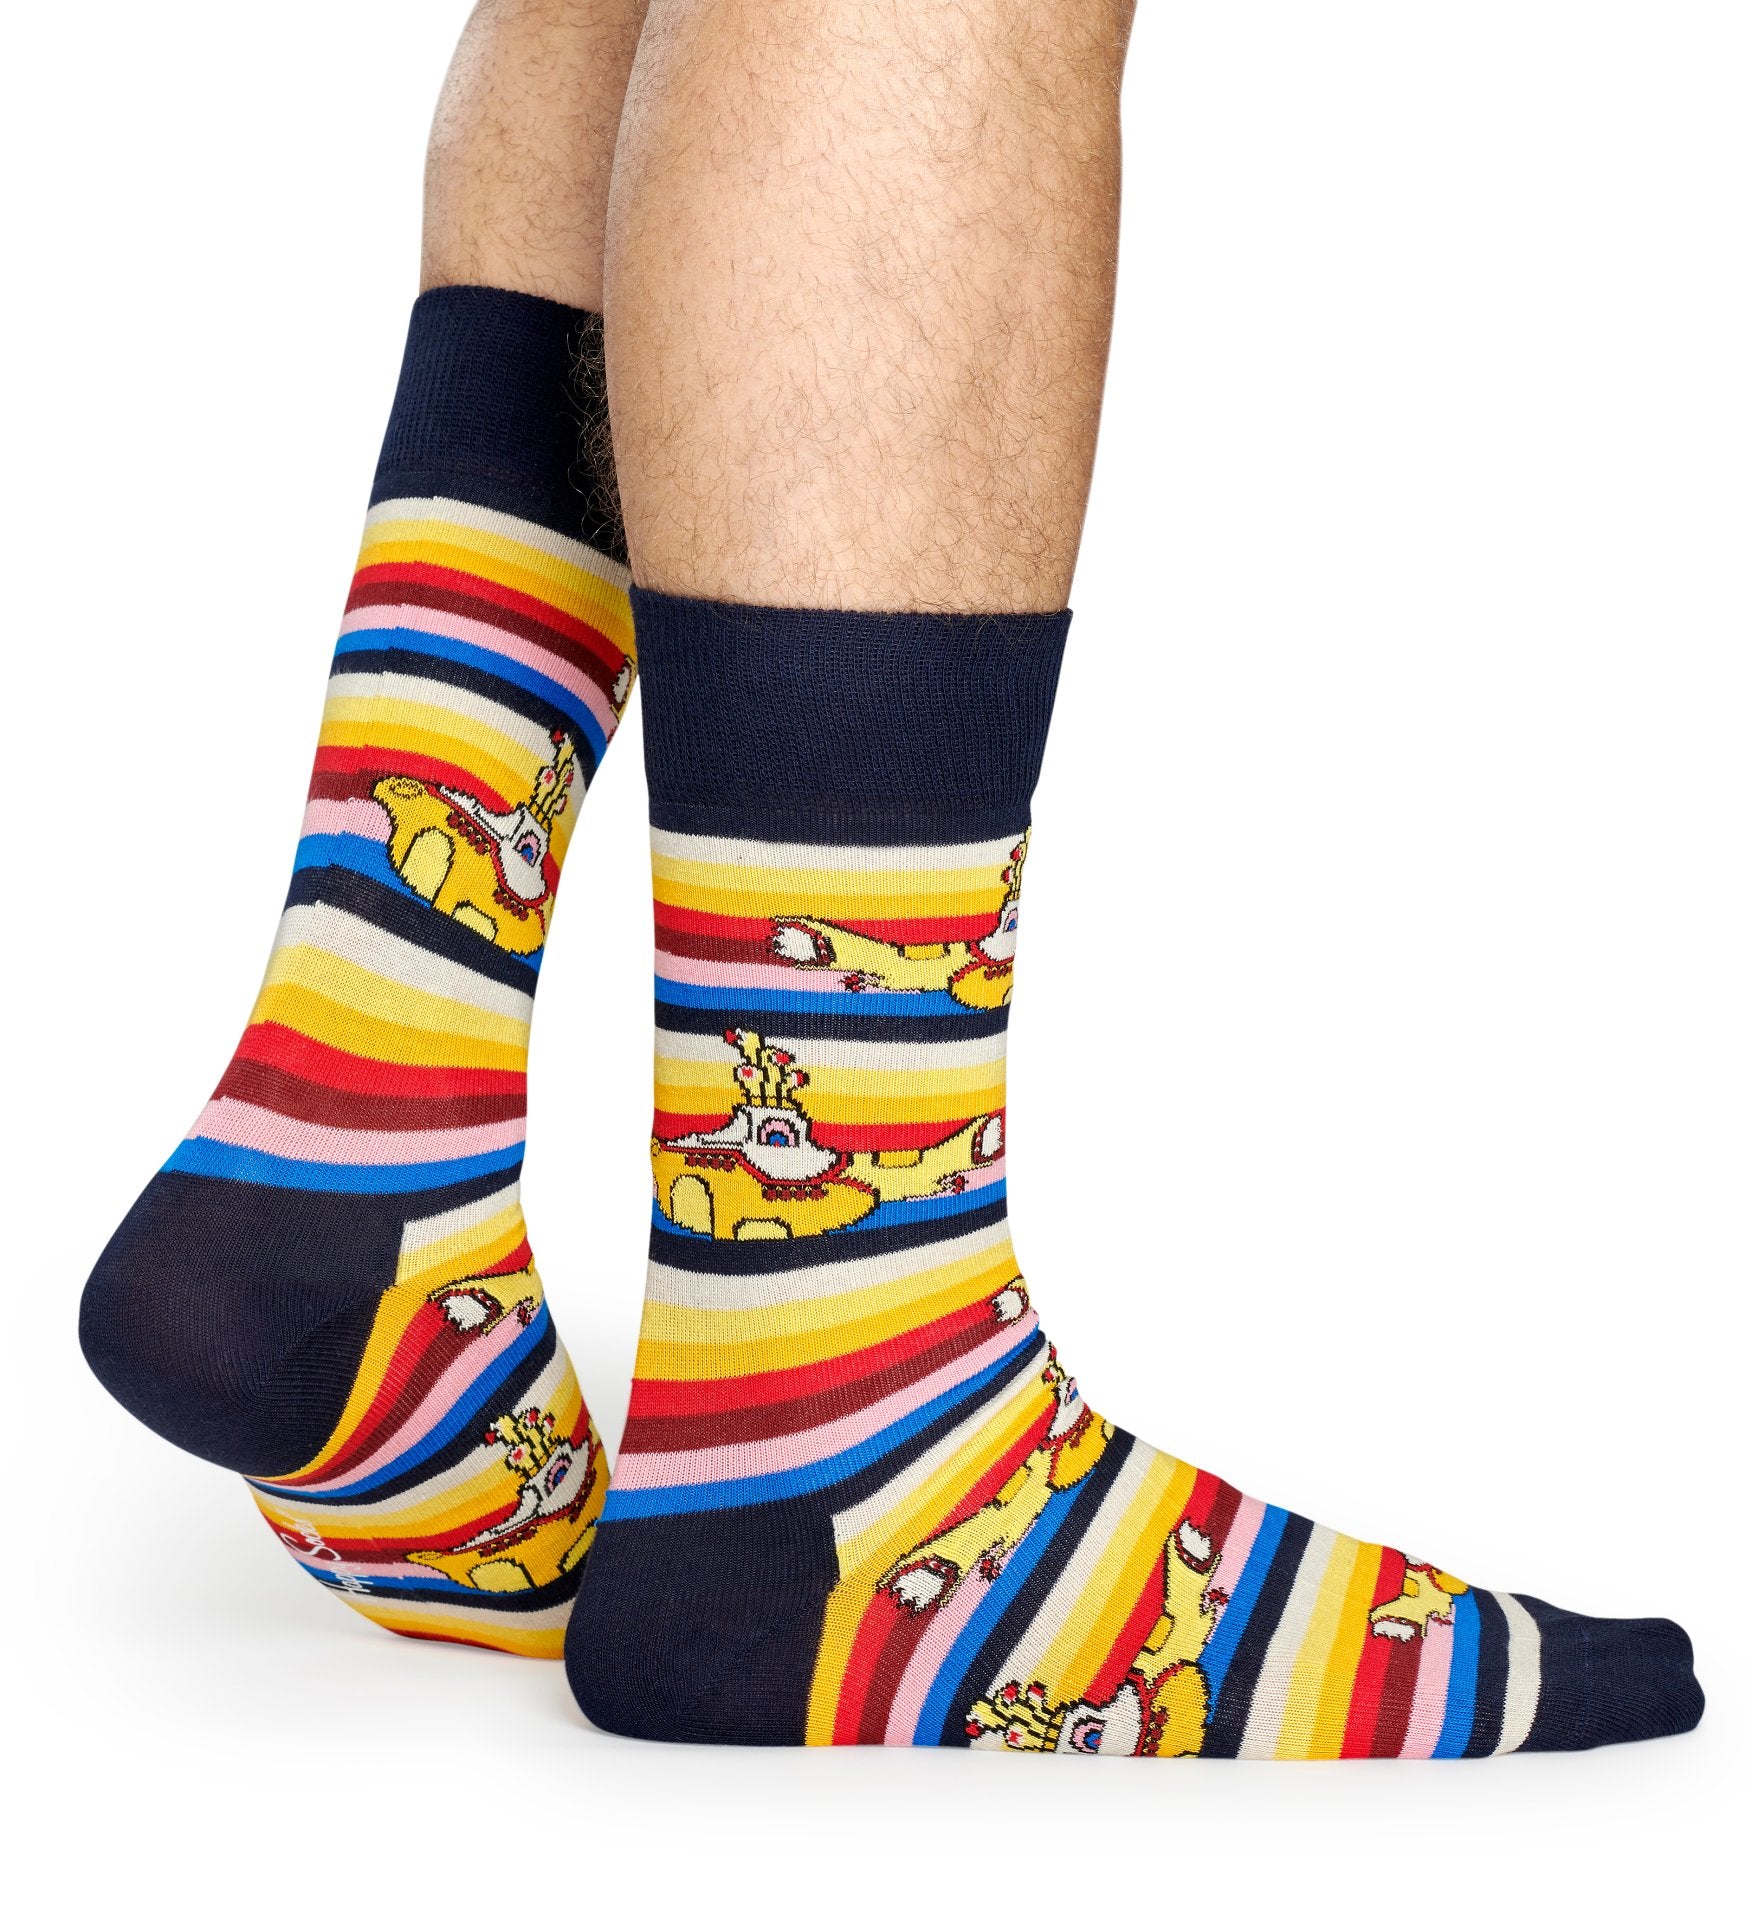 Žluto-černé pruhované ponožky s ponorkami z kolekce Happy Socks x Beatles, vzor All On Board